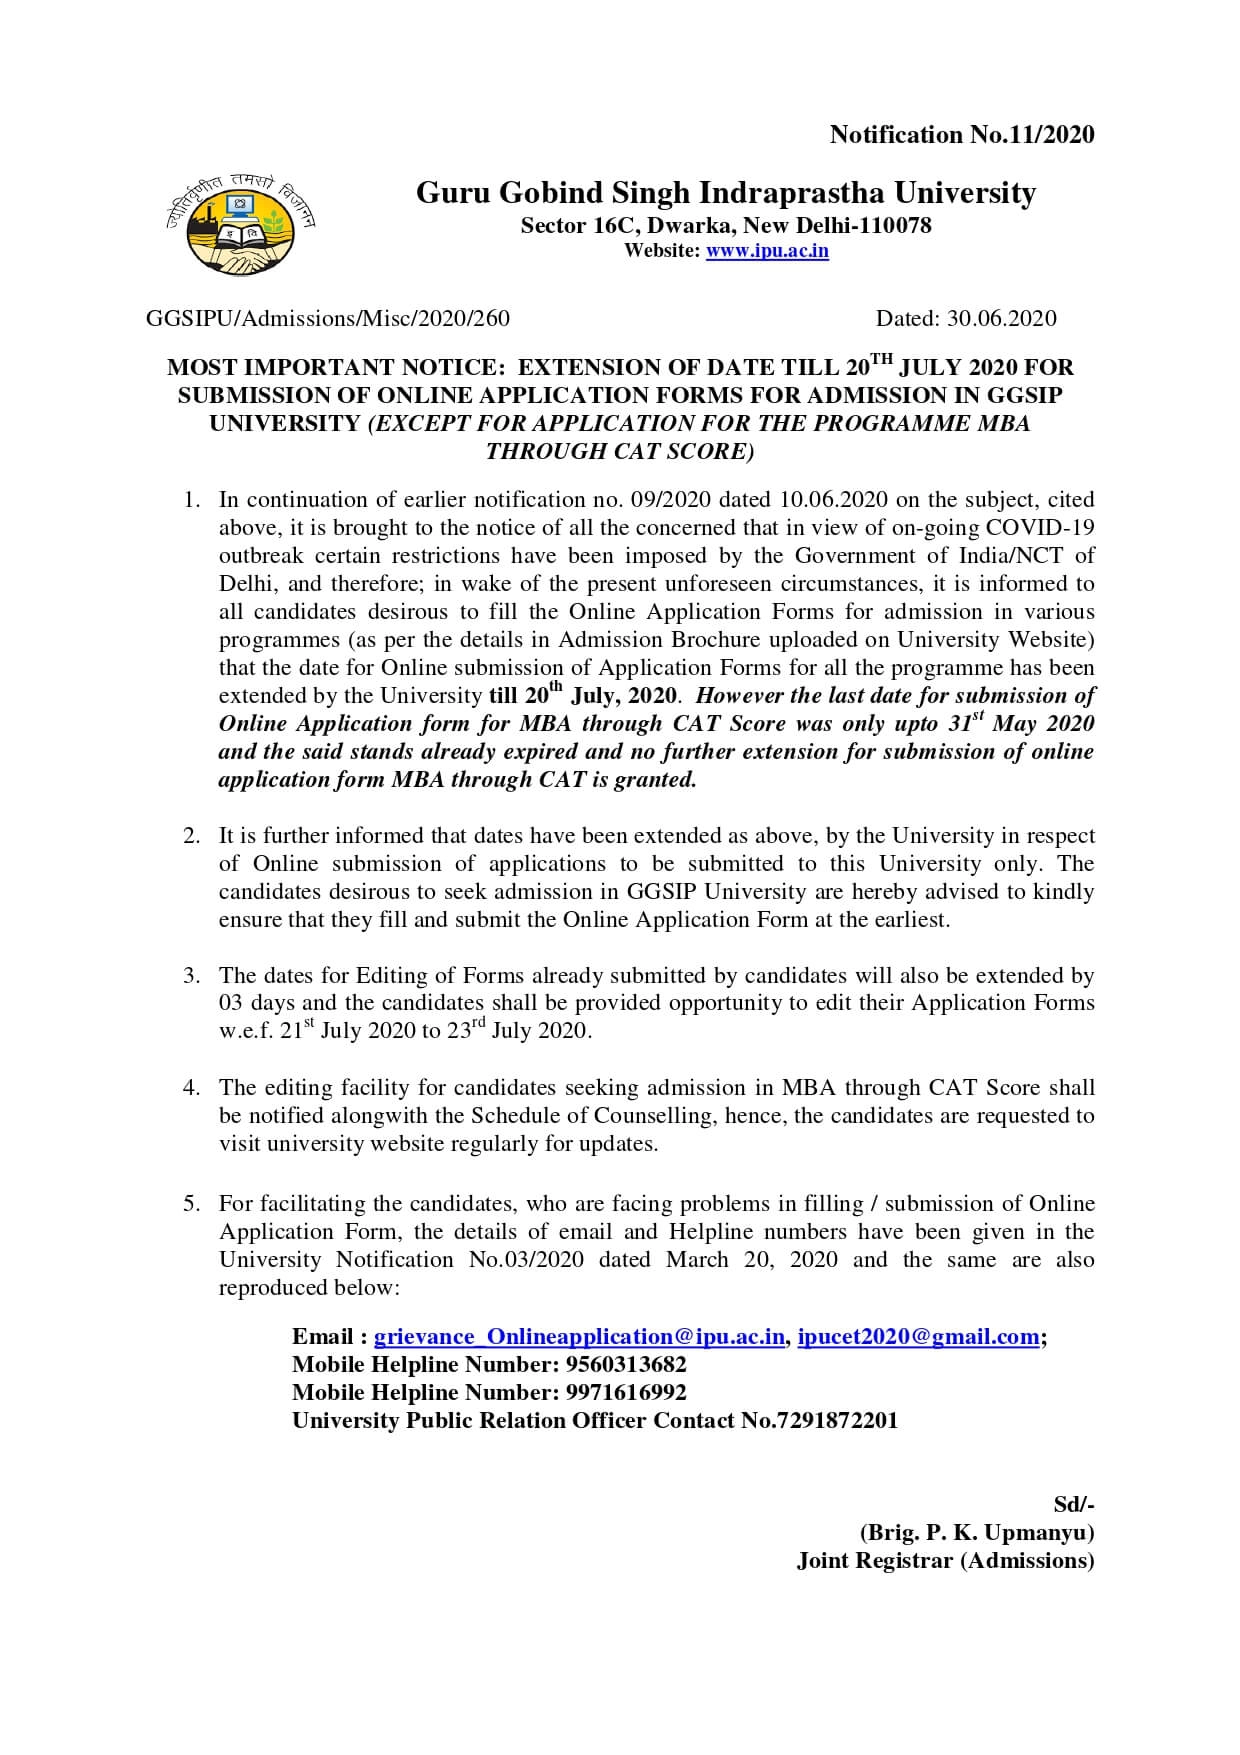 IPU CET 2020 June 30 Extension Notice